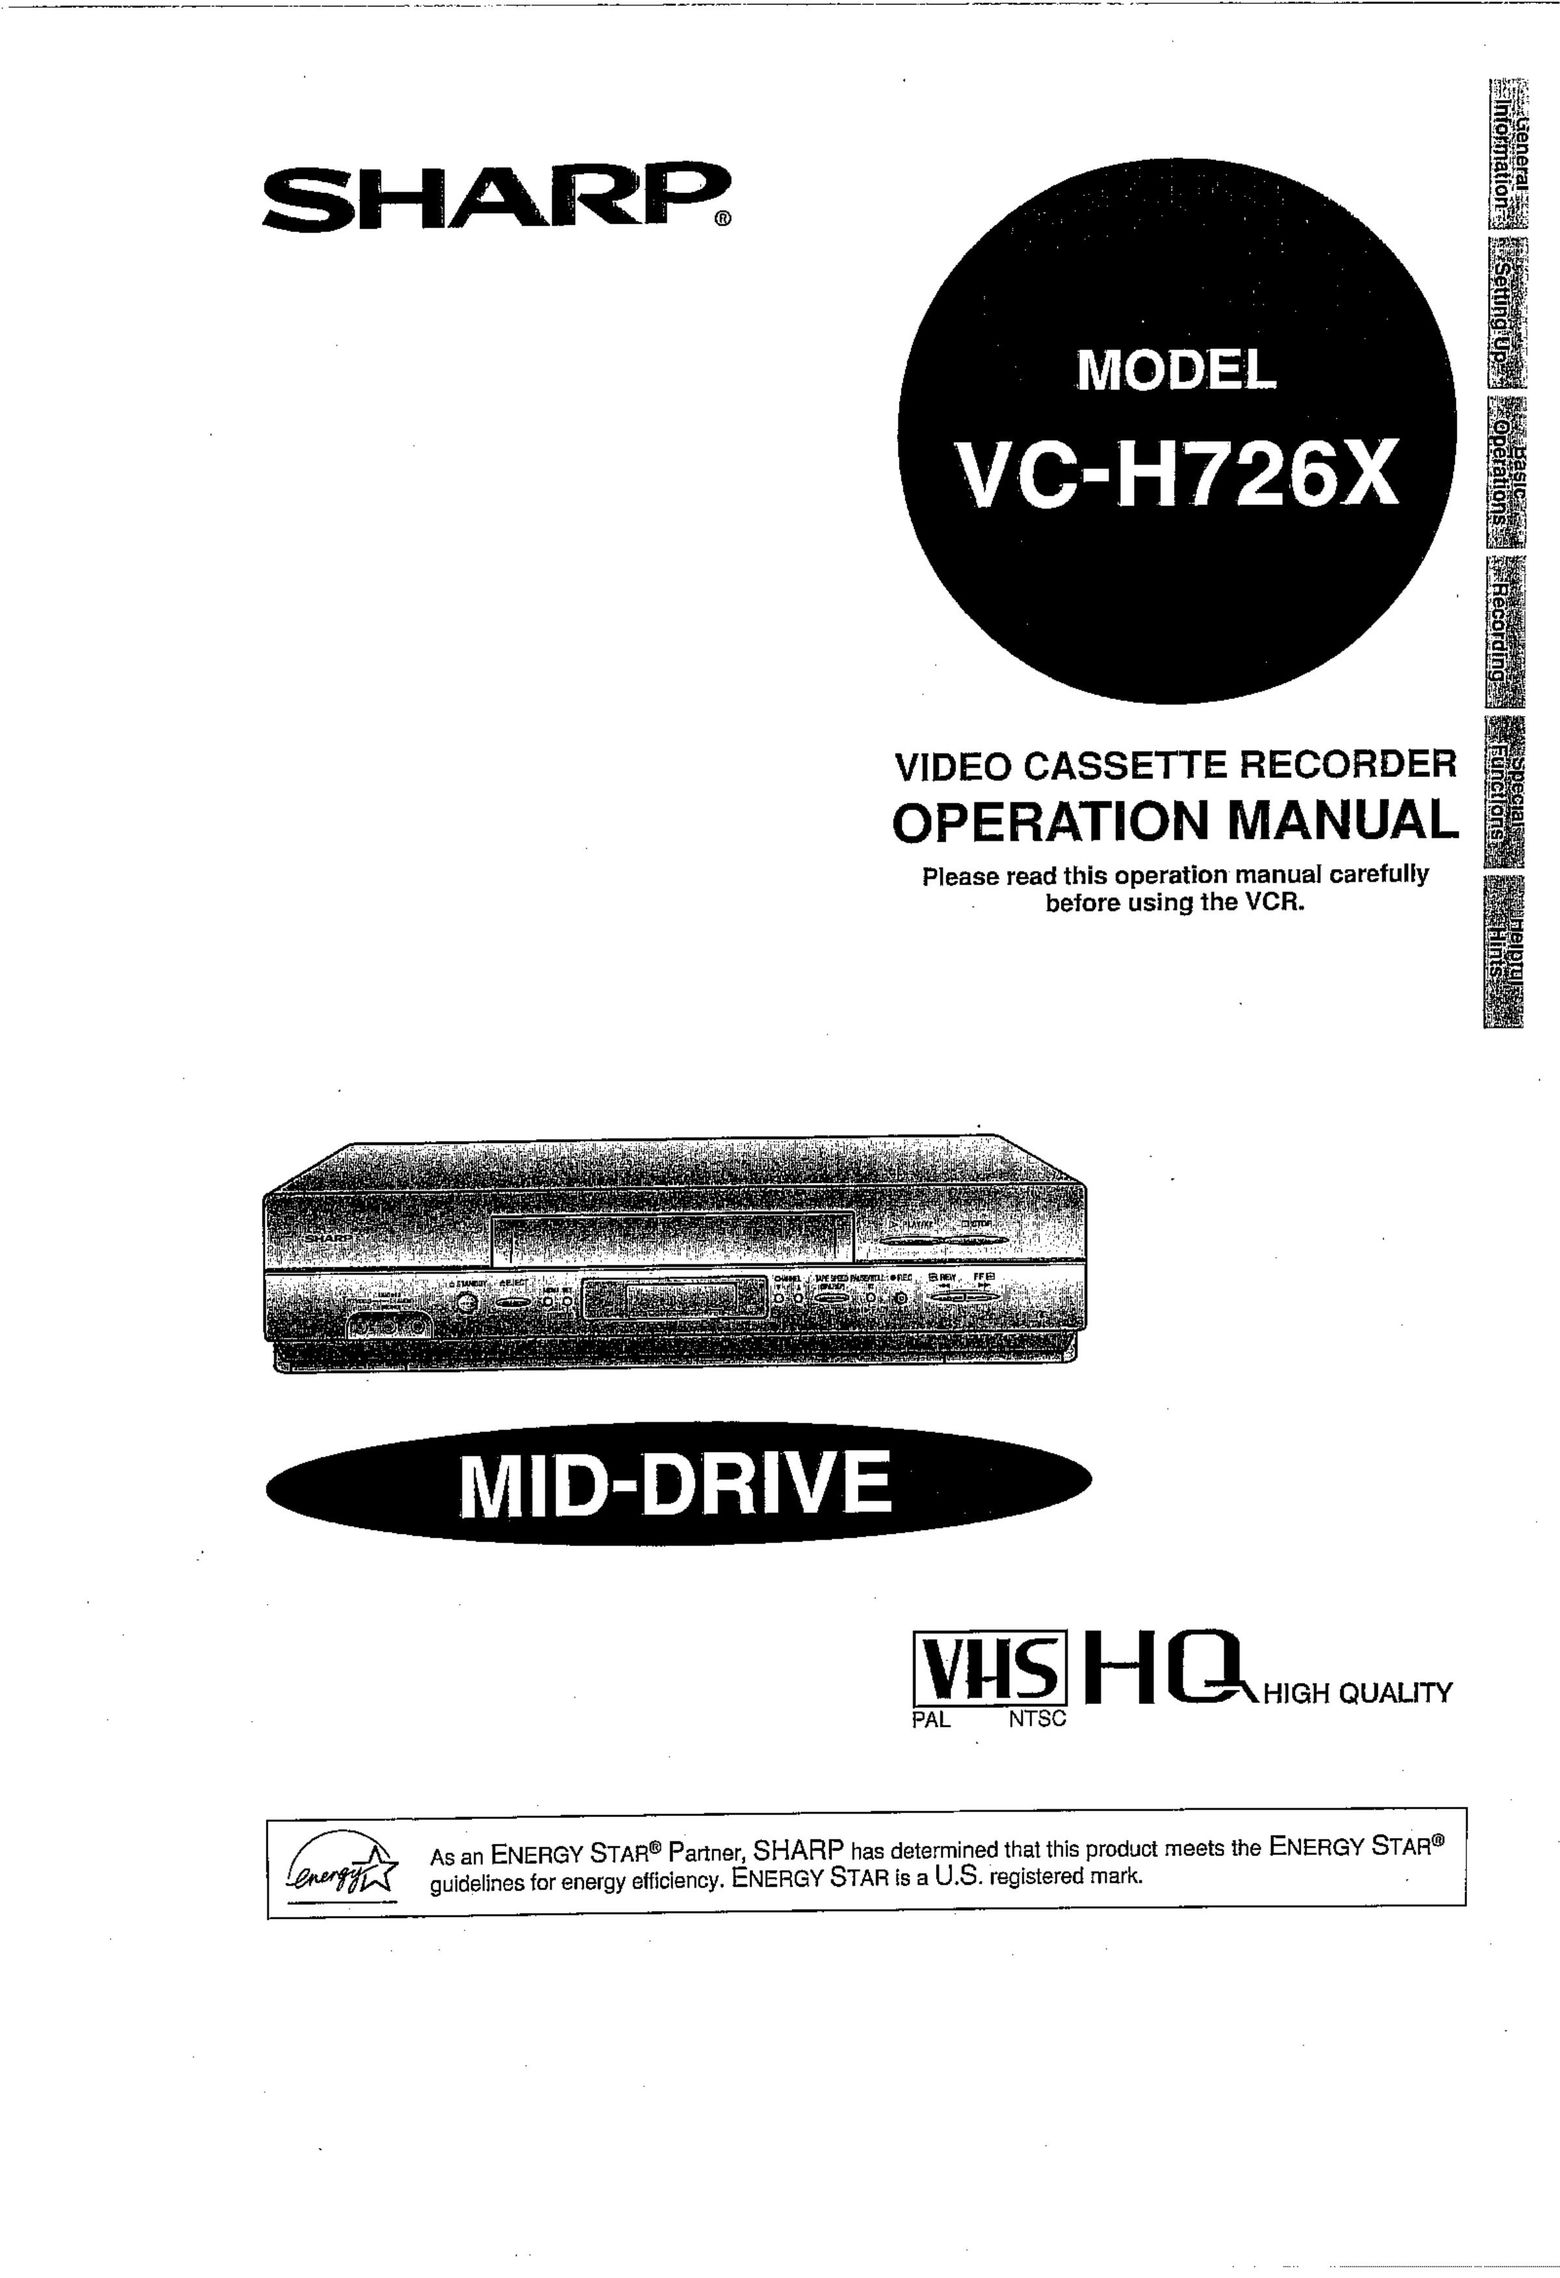 Sharp VC-H726X VCR User Manual